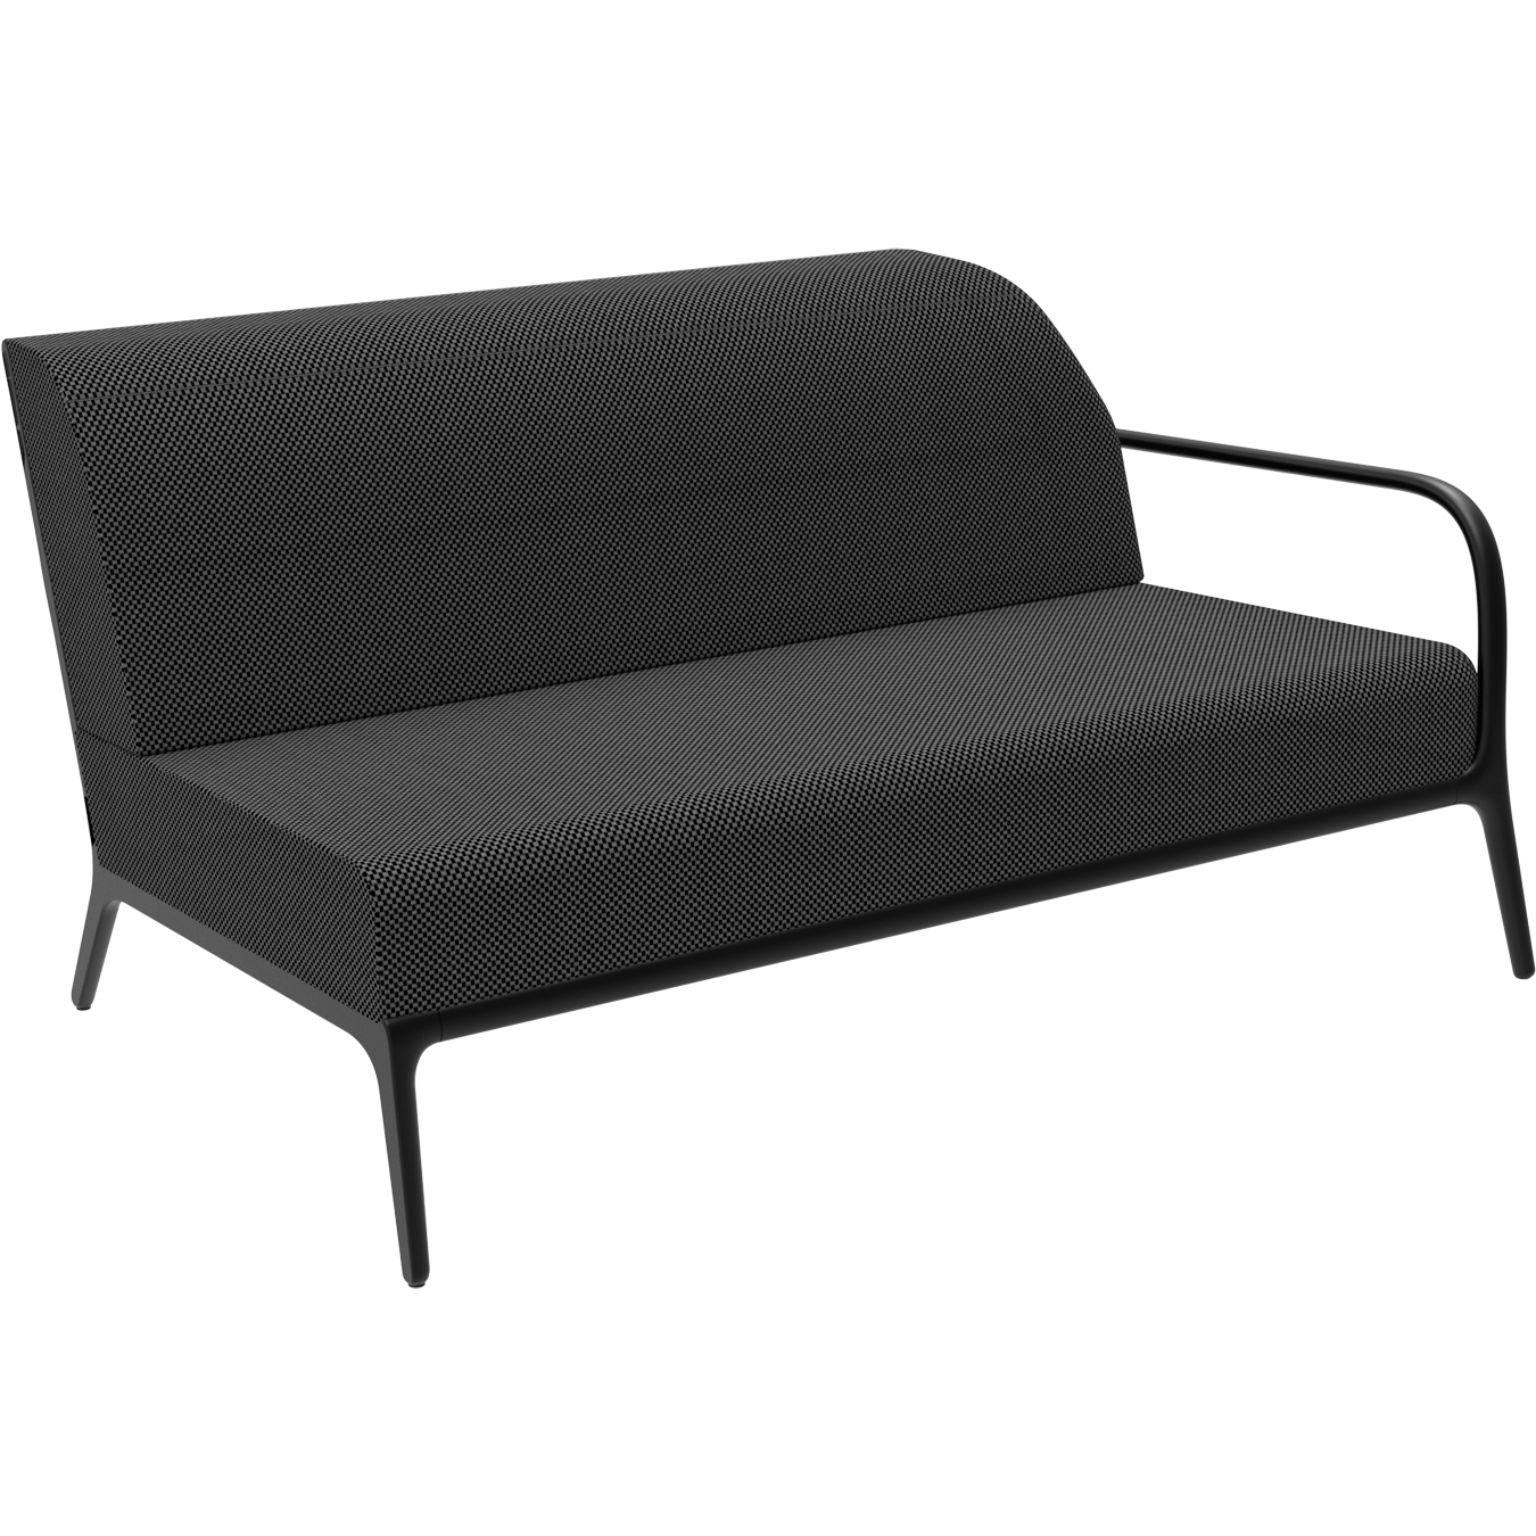 Xaloc links 160 schwarzes modulares sofa von MOWEE
Abmessungen: T100 x B160 x H81 cm (Sitzhöhe 42cm)
MATERIAL: Aluminium, Textil
Gewicht: 37 kg
Auch in verschiedenen Farben und Ausführungen erhältlich.

 Xaloc synthetisiert die Linien der